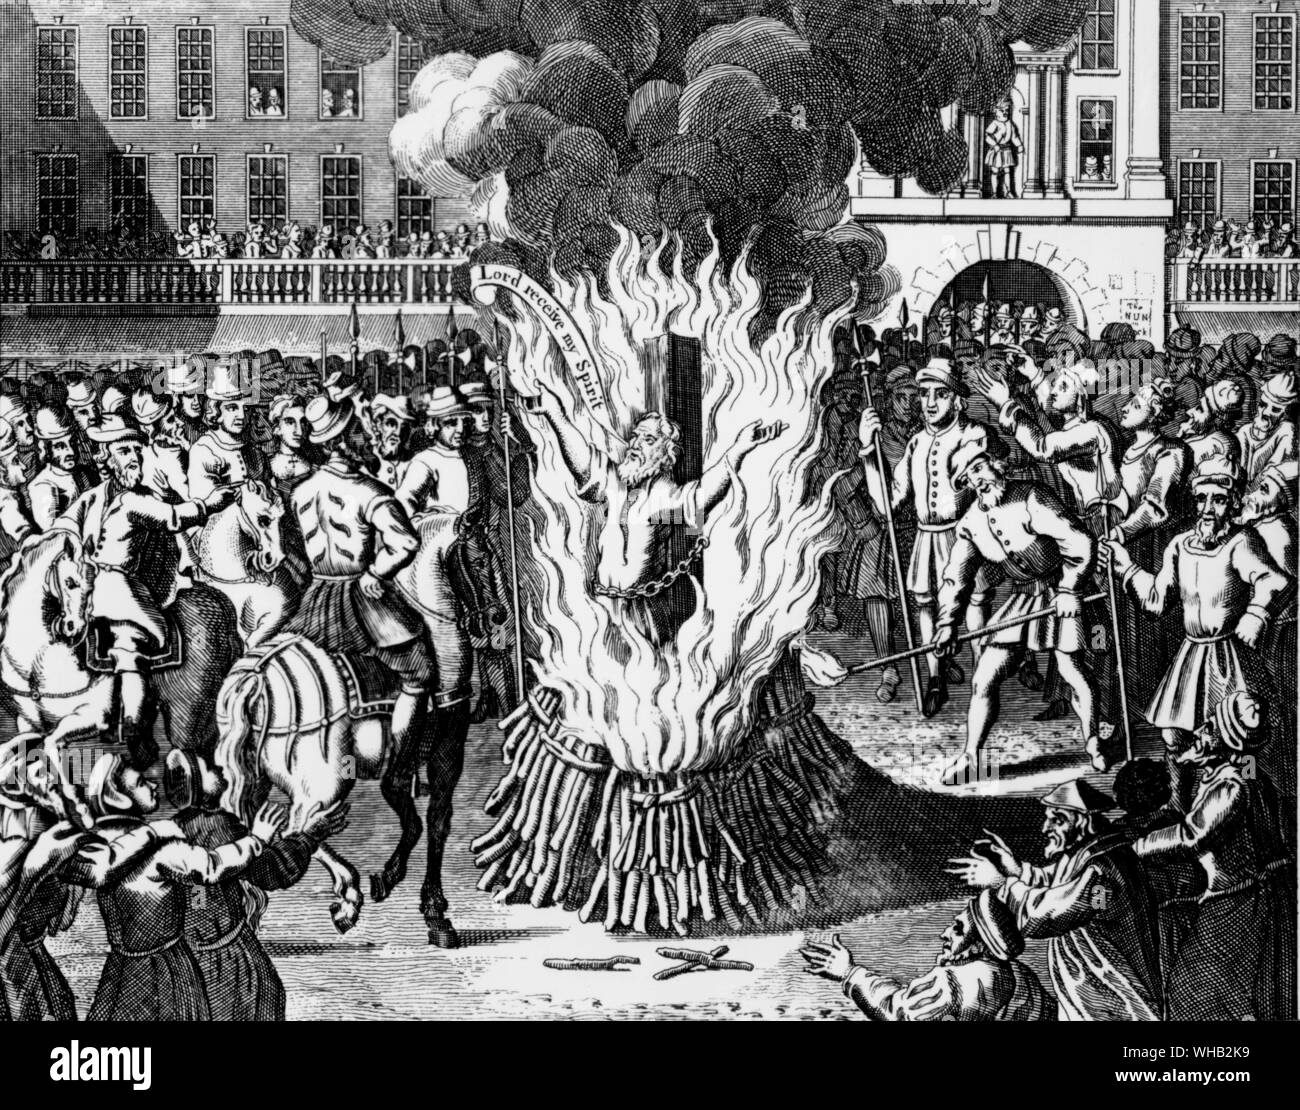 La combustion du Maître John Rogers - vicaire de Saint sépulcres & Reader de Saint-Paul à Londres - 4 février 1555.. Foxe's Book of Martyrs, chapitre 16.. Banque D'Images